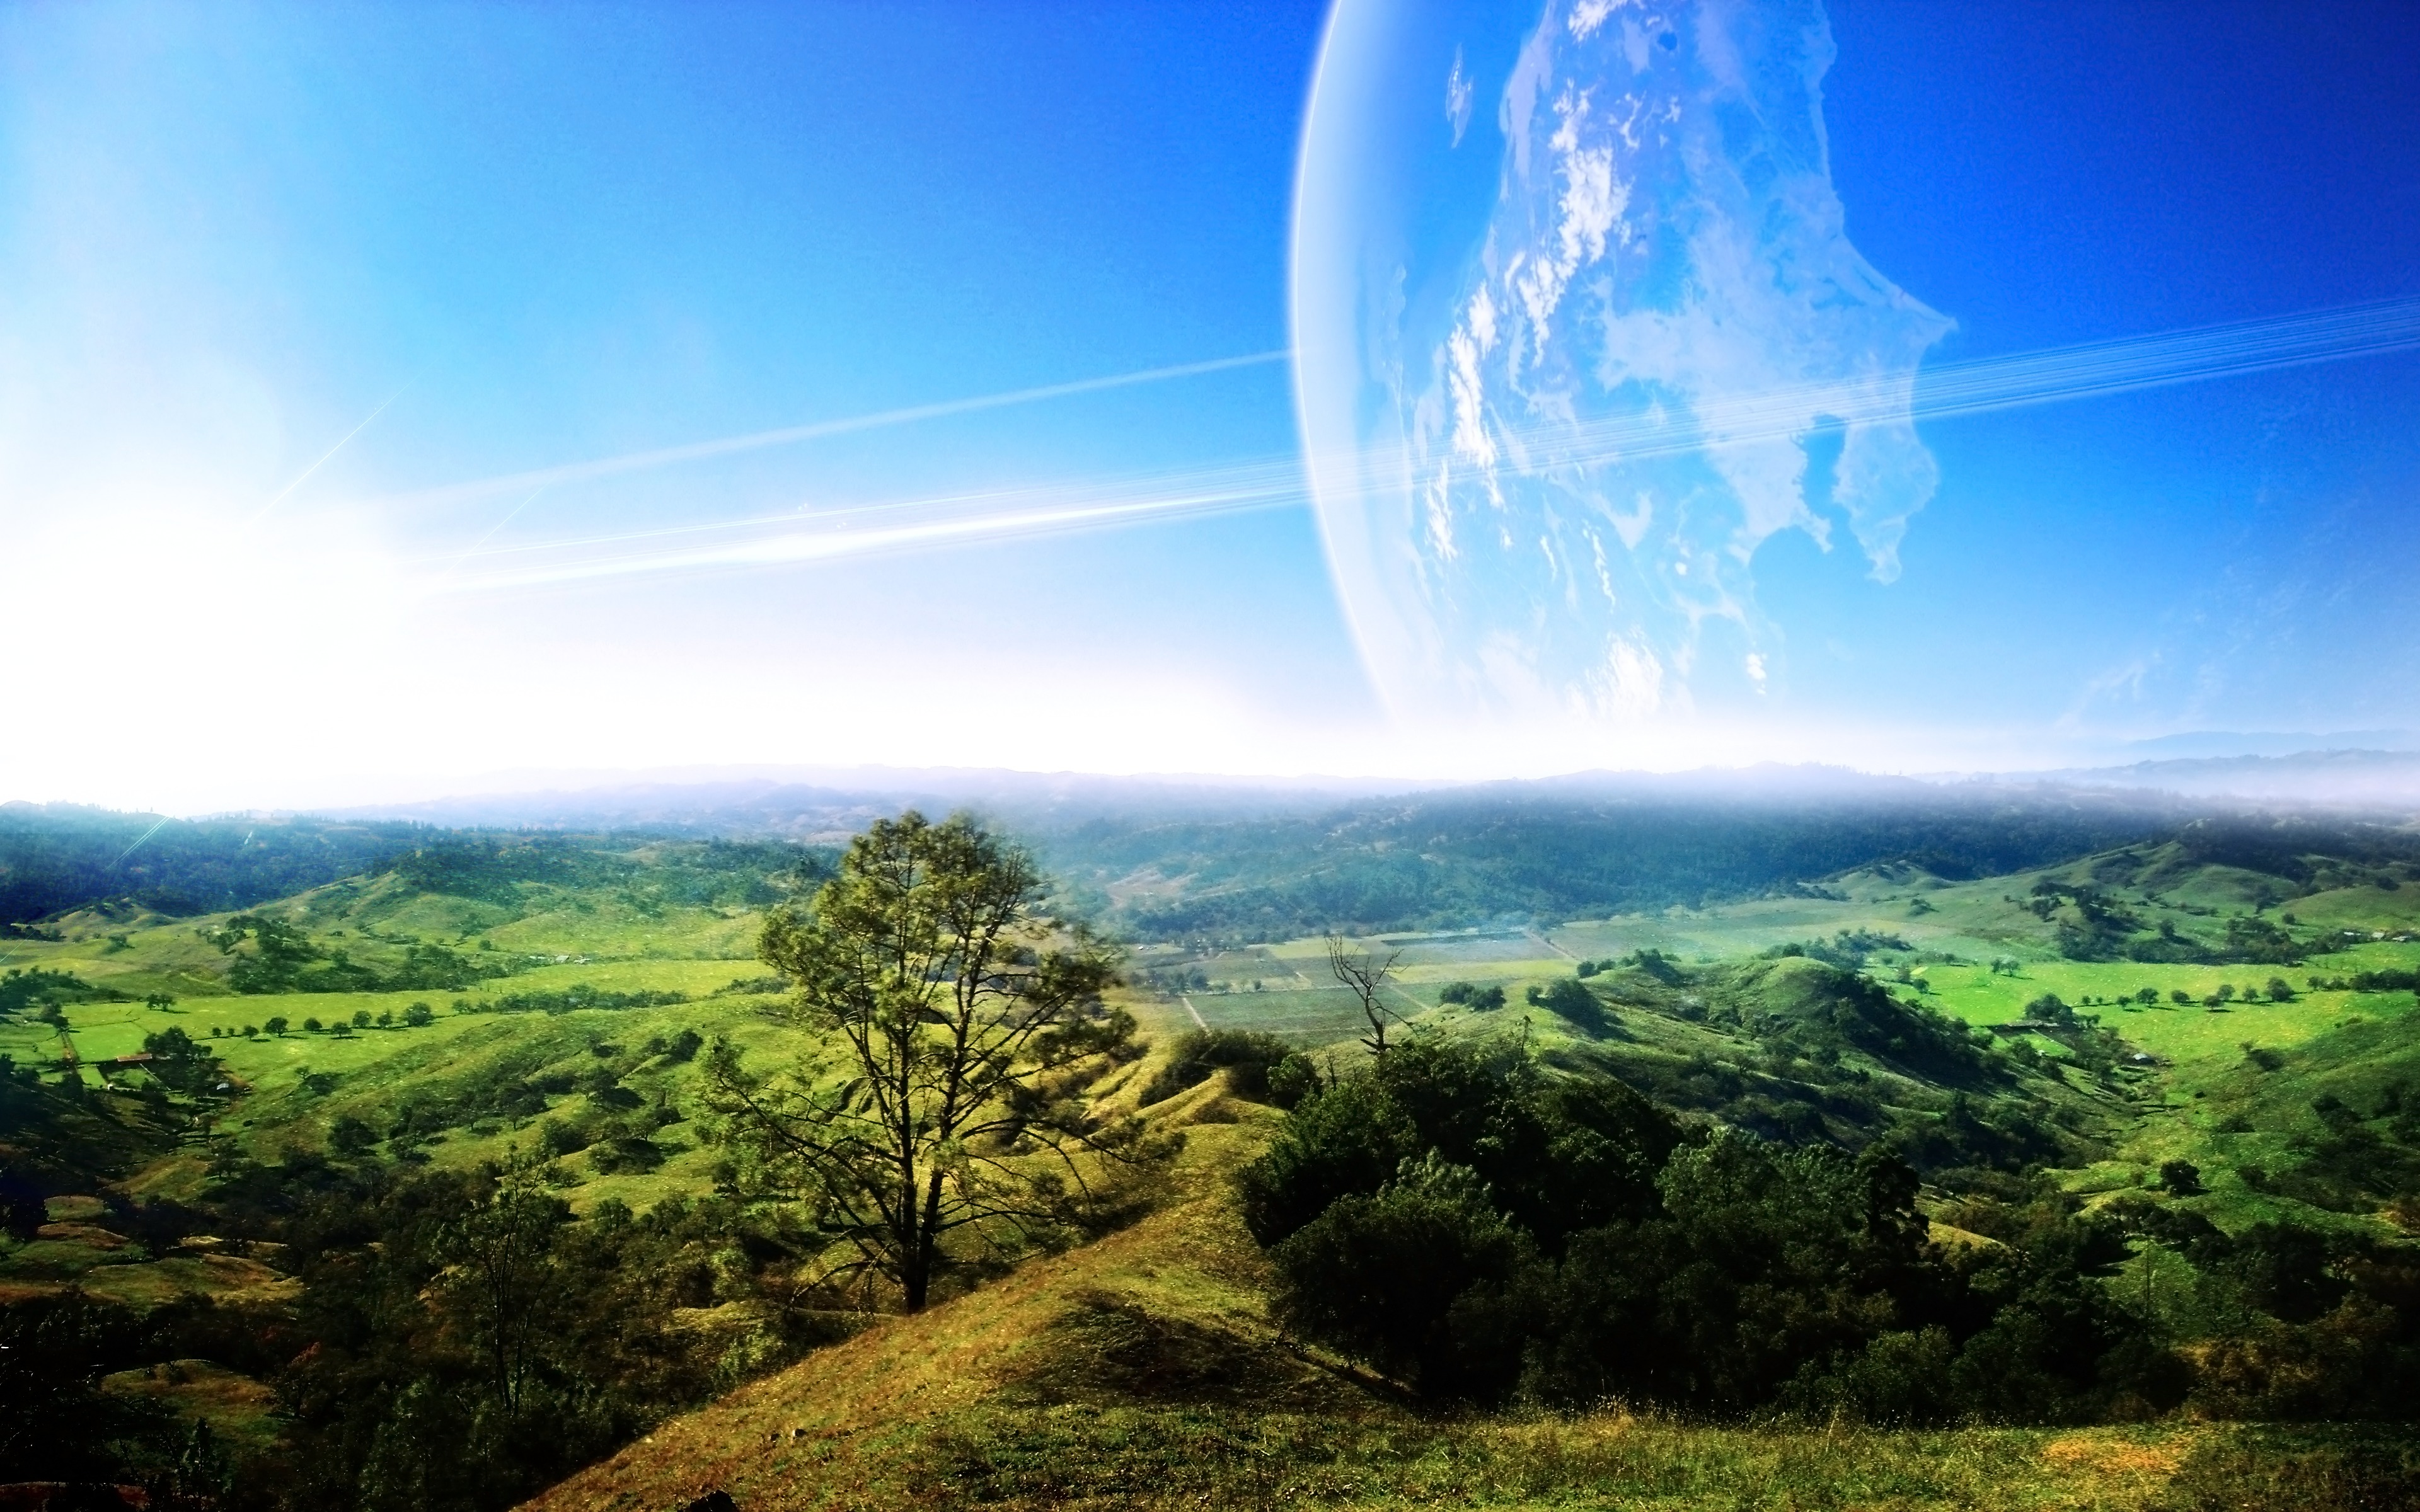 壁紙 3840x2400 風景写真 惑星 地平線 自然 ファンタジー ダウンロード 写真